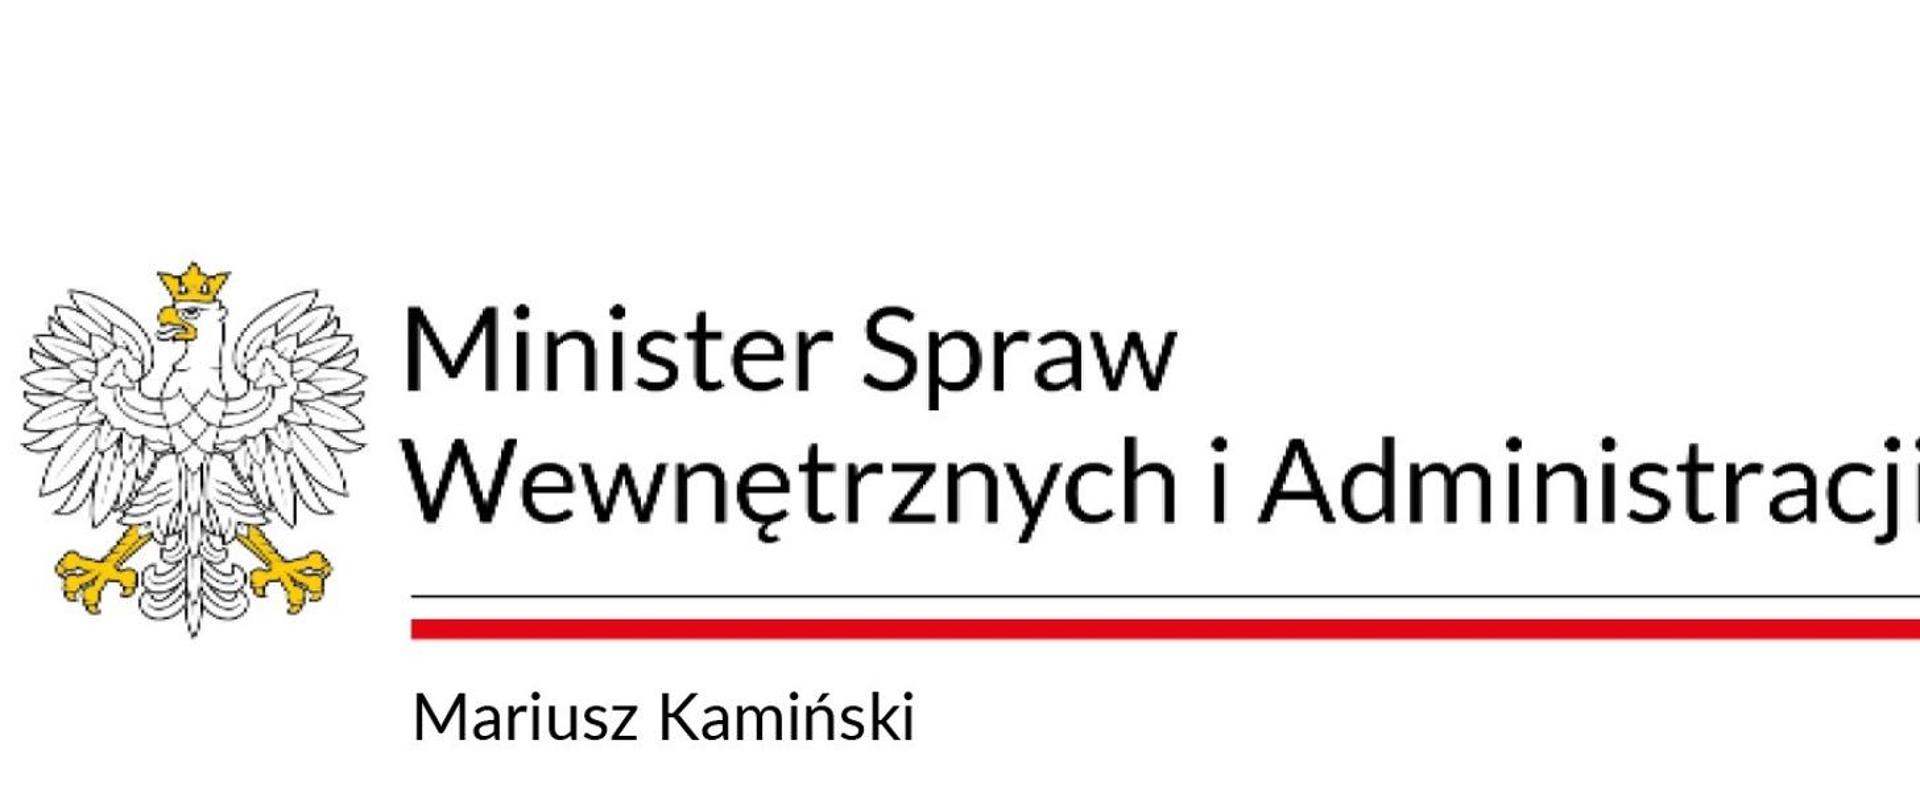 Orzeł w koronie i napis Minister Spraw Wewnętrznych i Administracji. Poniżej flaga państwowowa, a pod nią napis Mariusz Kamiński